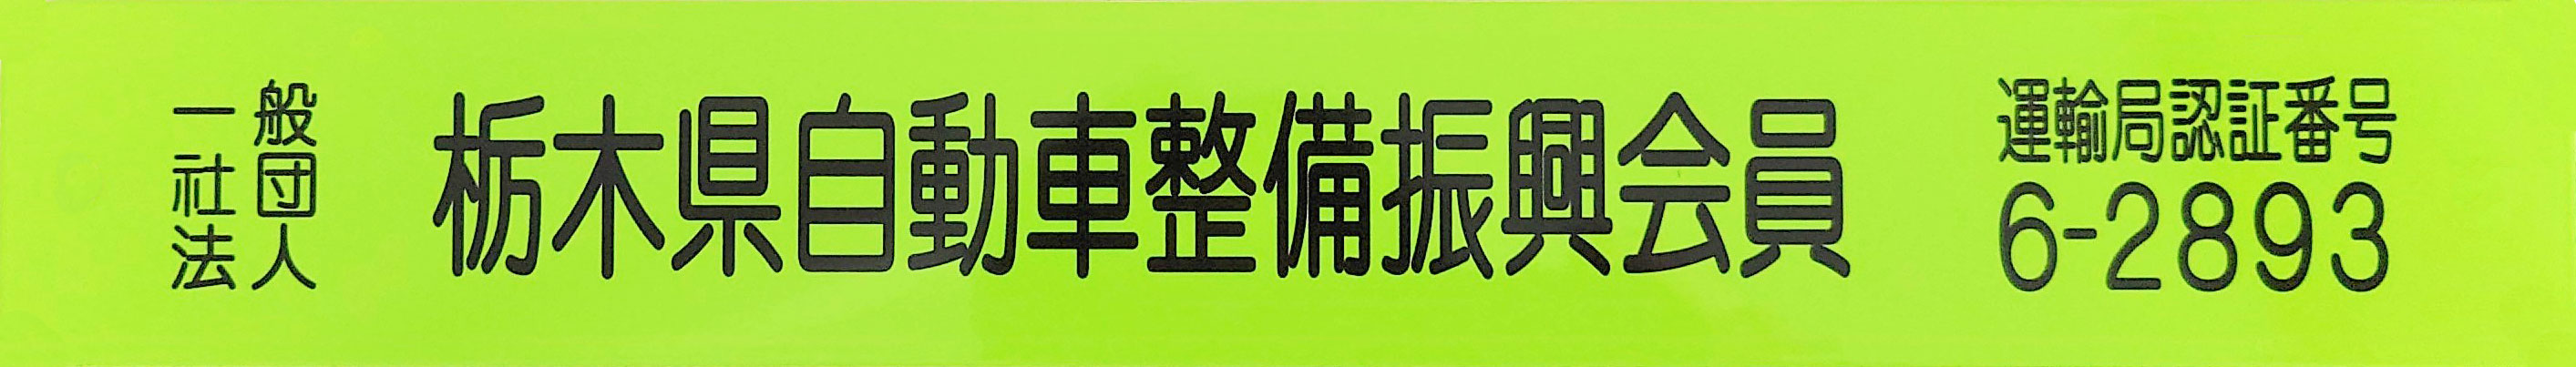 栃木県自動車整備振興会員